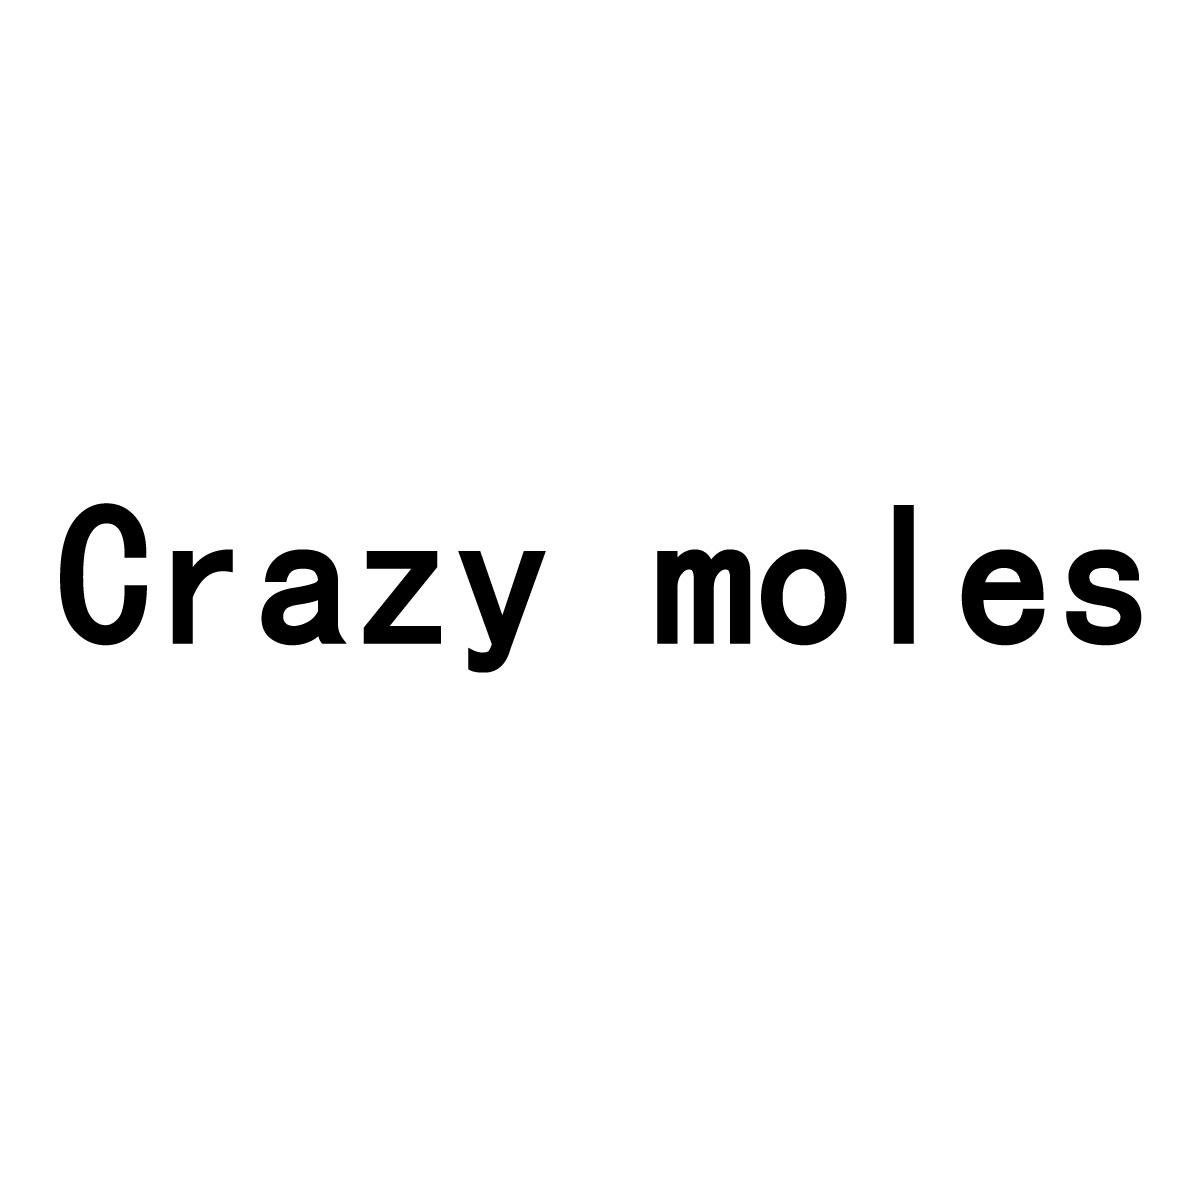 CRAZY MOLES